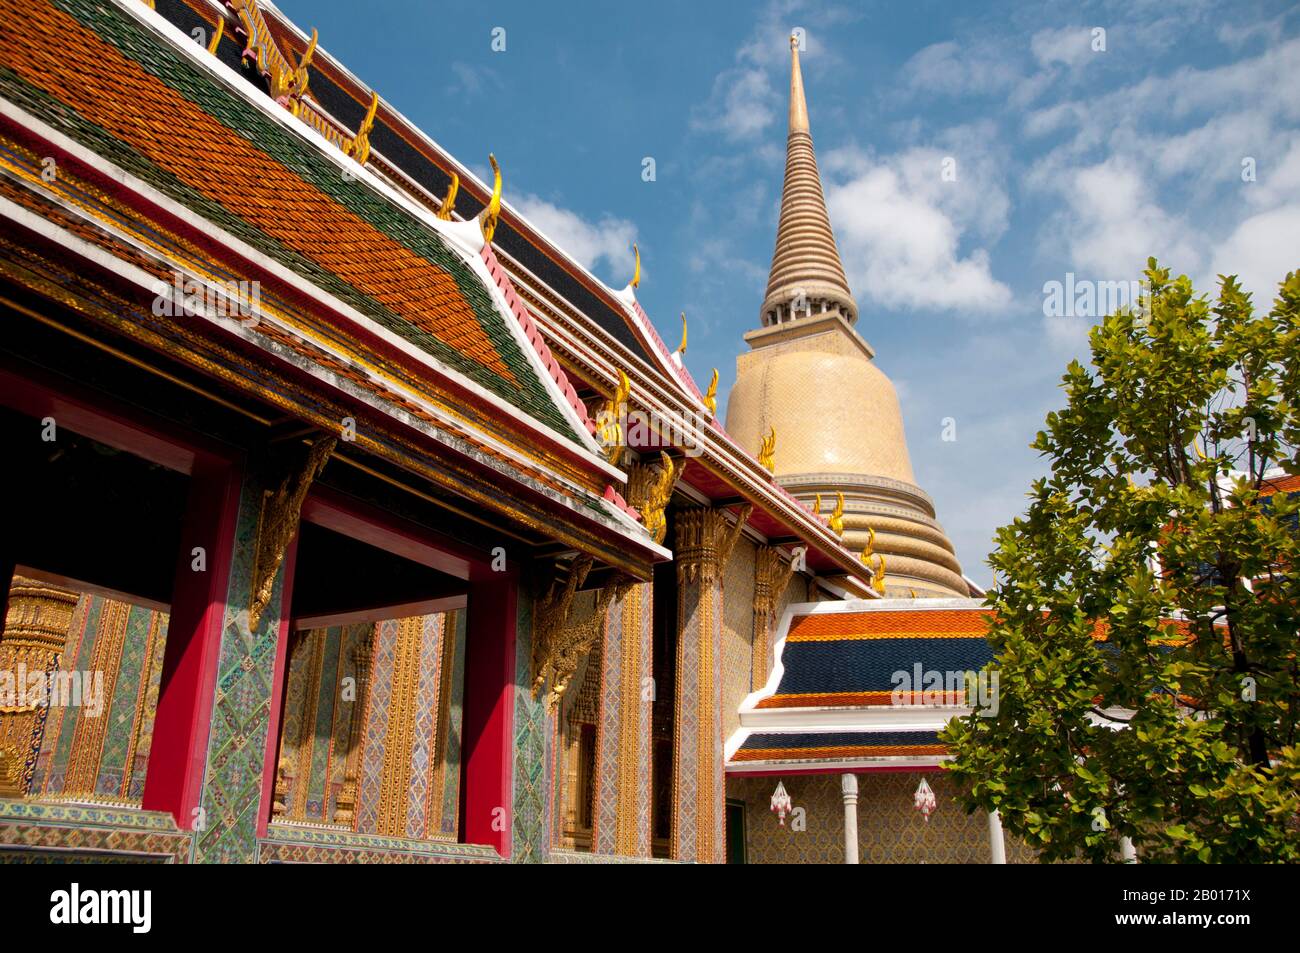 Thaïlande: Le chedi de style sri-lankais à Wat Ratchabophit, Bangkok.Wat Ratchabophit (Rajabophit) fut construit sous le règne du roi Chulalongkorn (Rama V, 1868 - 1910).Le temple mêle les styles architecturaux est et Ouest et est réputé pour son cloître circulaire entourant le grand chedi de style sri-lankais et reliant l'ubosot (bot) au nord avec le viharn au sud. Banque D'Images